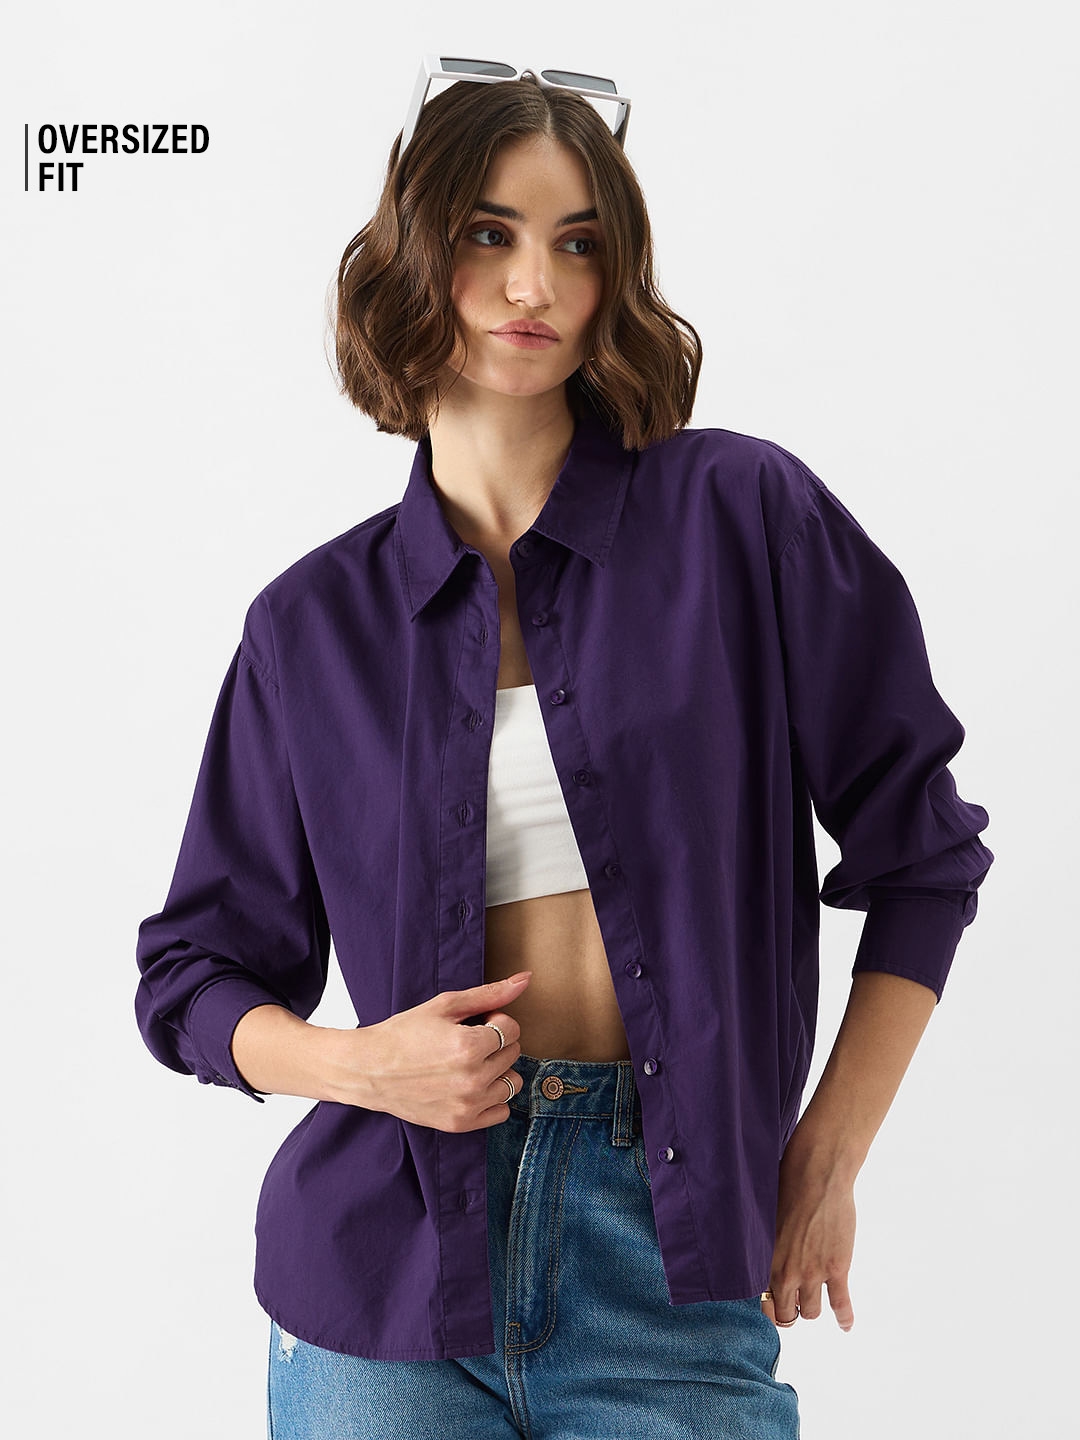 Women's Solids: Purple Haze Women's Boyfriend Shirts